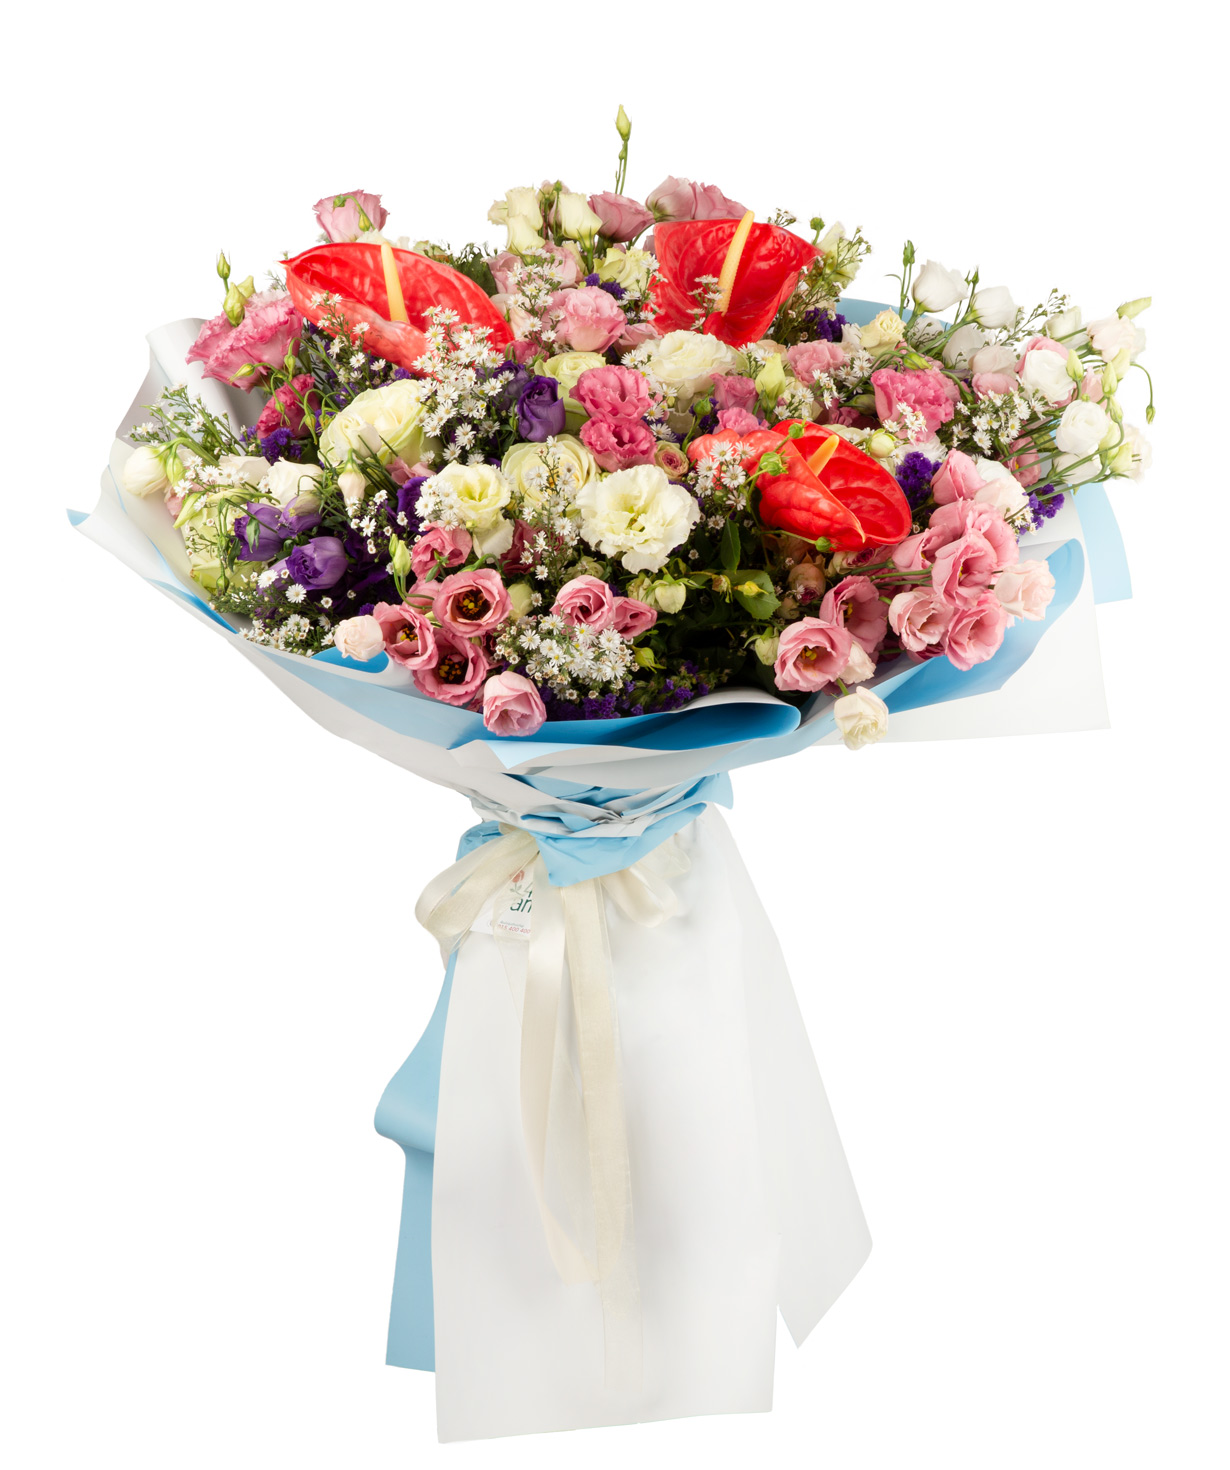 Ծաղկեփունջ «Floral Variety»  վարդերով,  անթորիումներով և լիզիանտուսներով